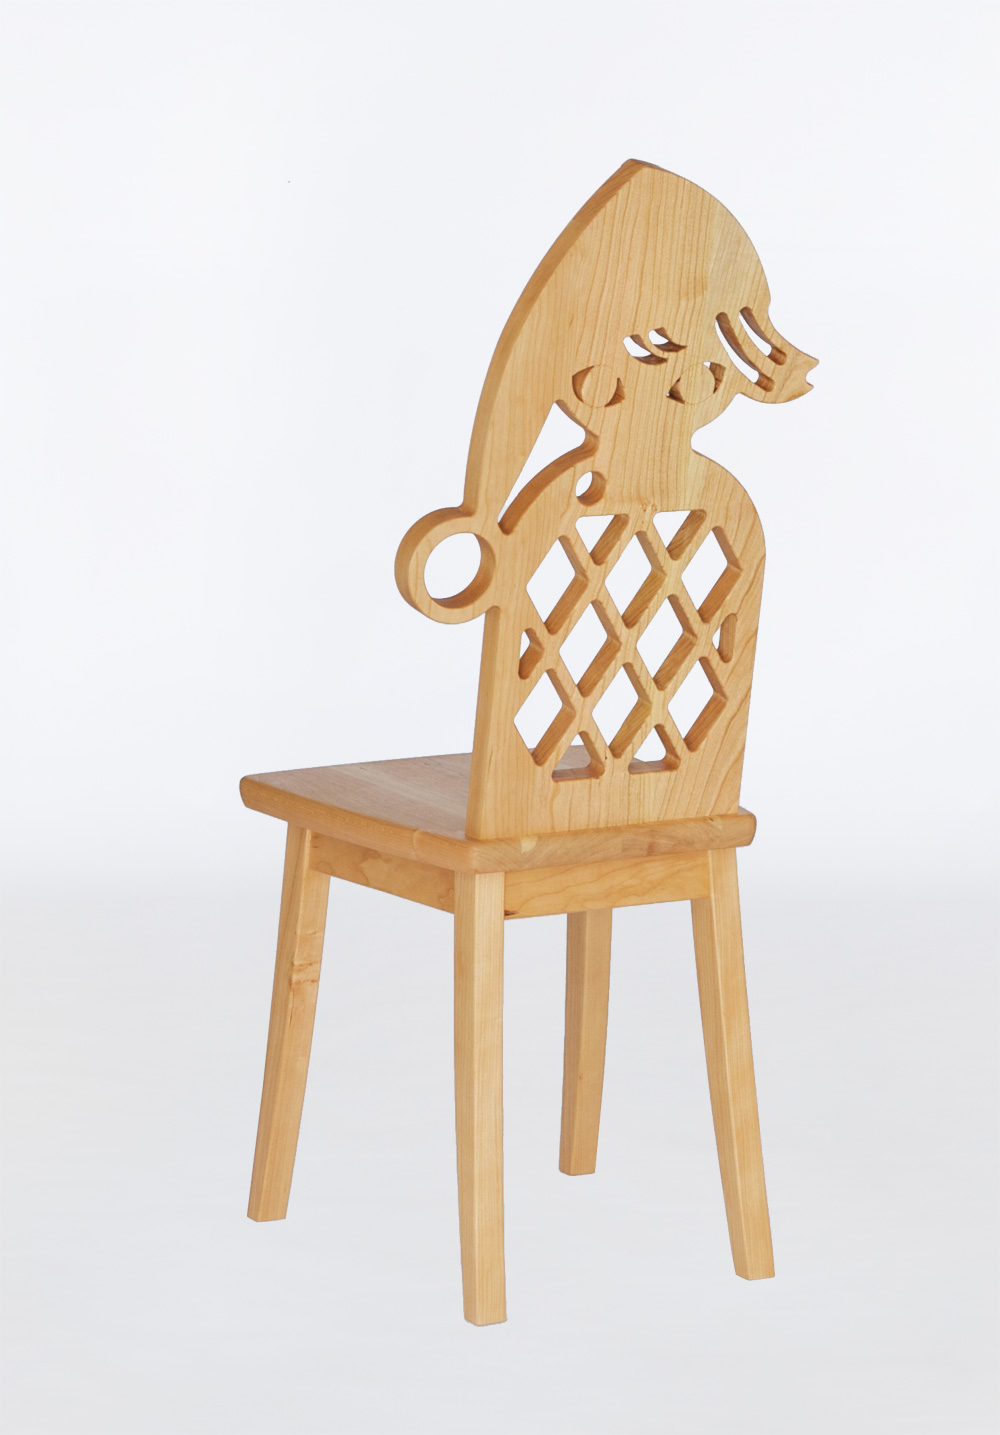 藤城清治さんの影絵に出てくる小人をモチーフにしたチェリーの椅子